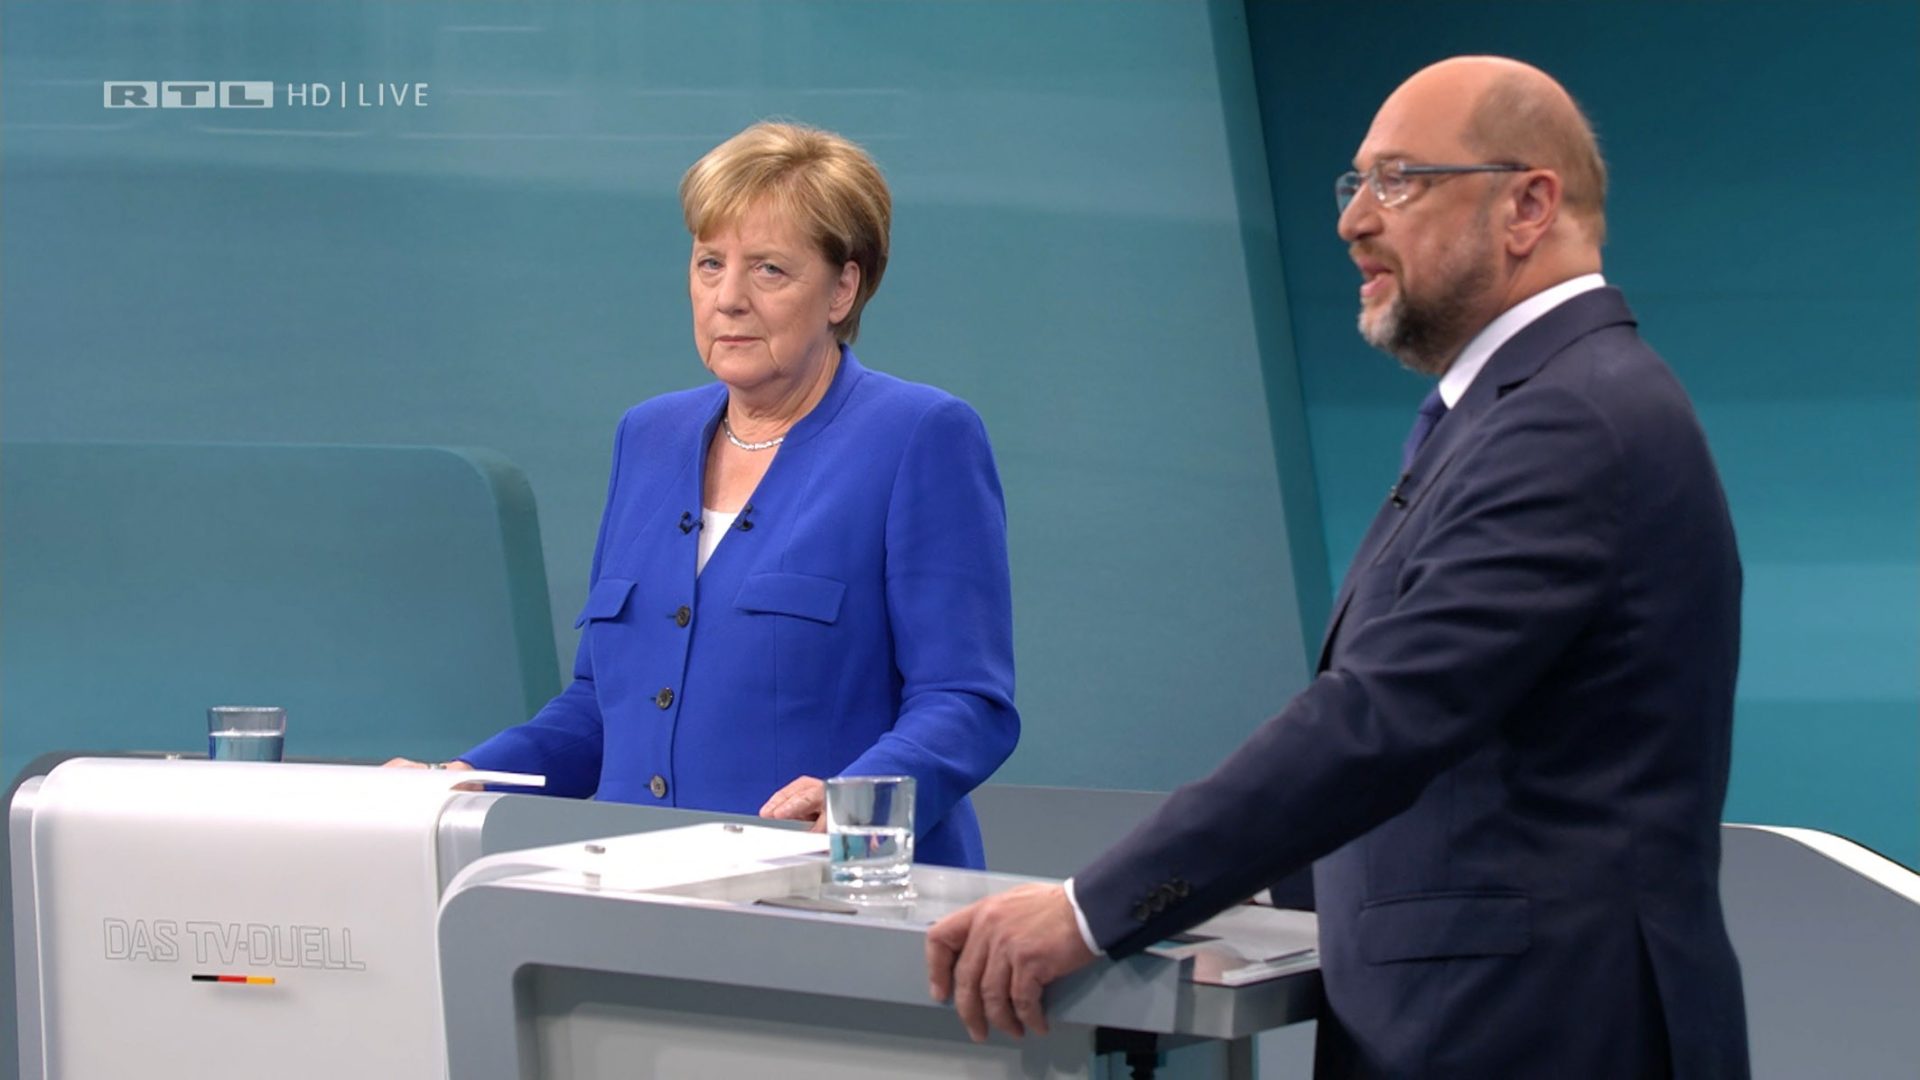 Eleições alemãs. Schulz incapaz de travar favoritismo de Merkel